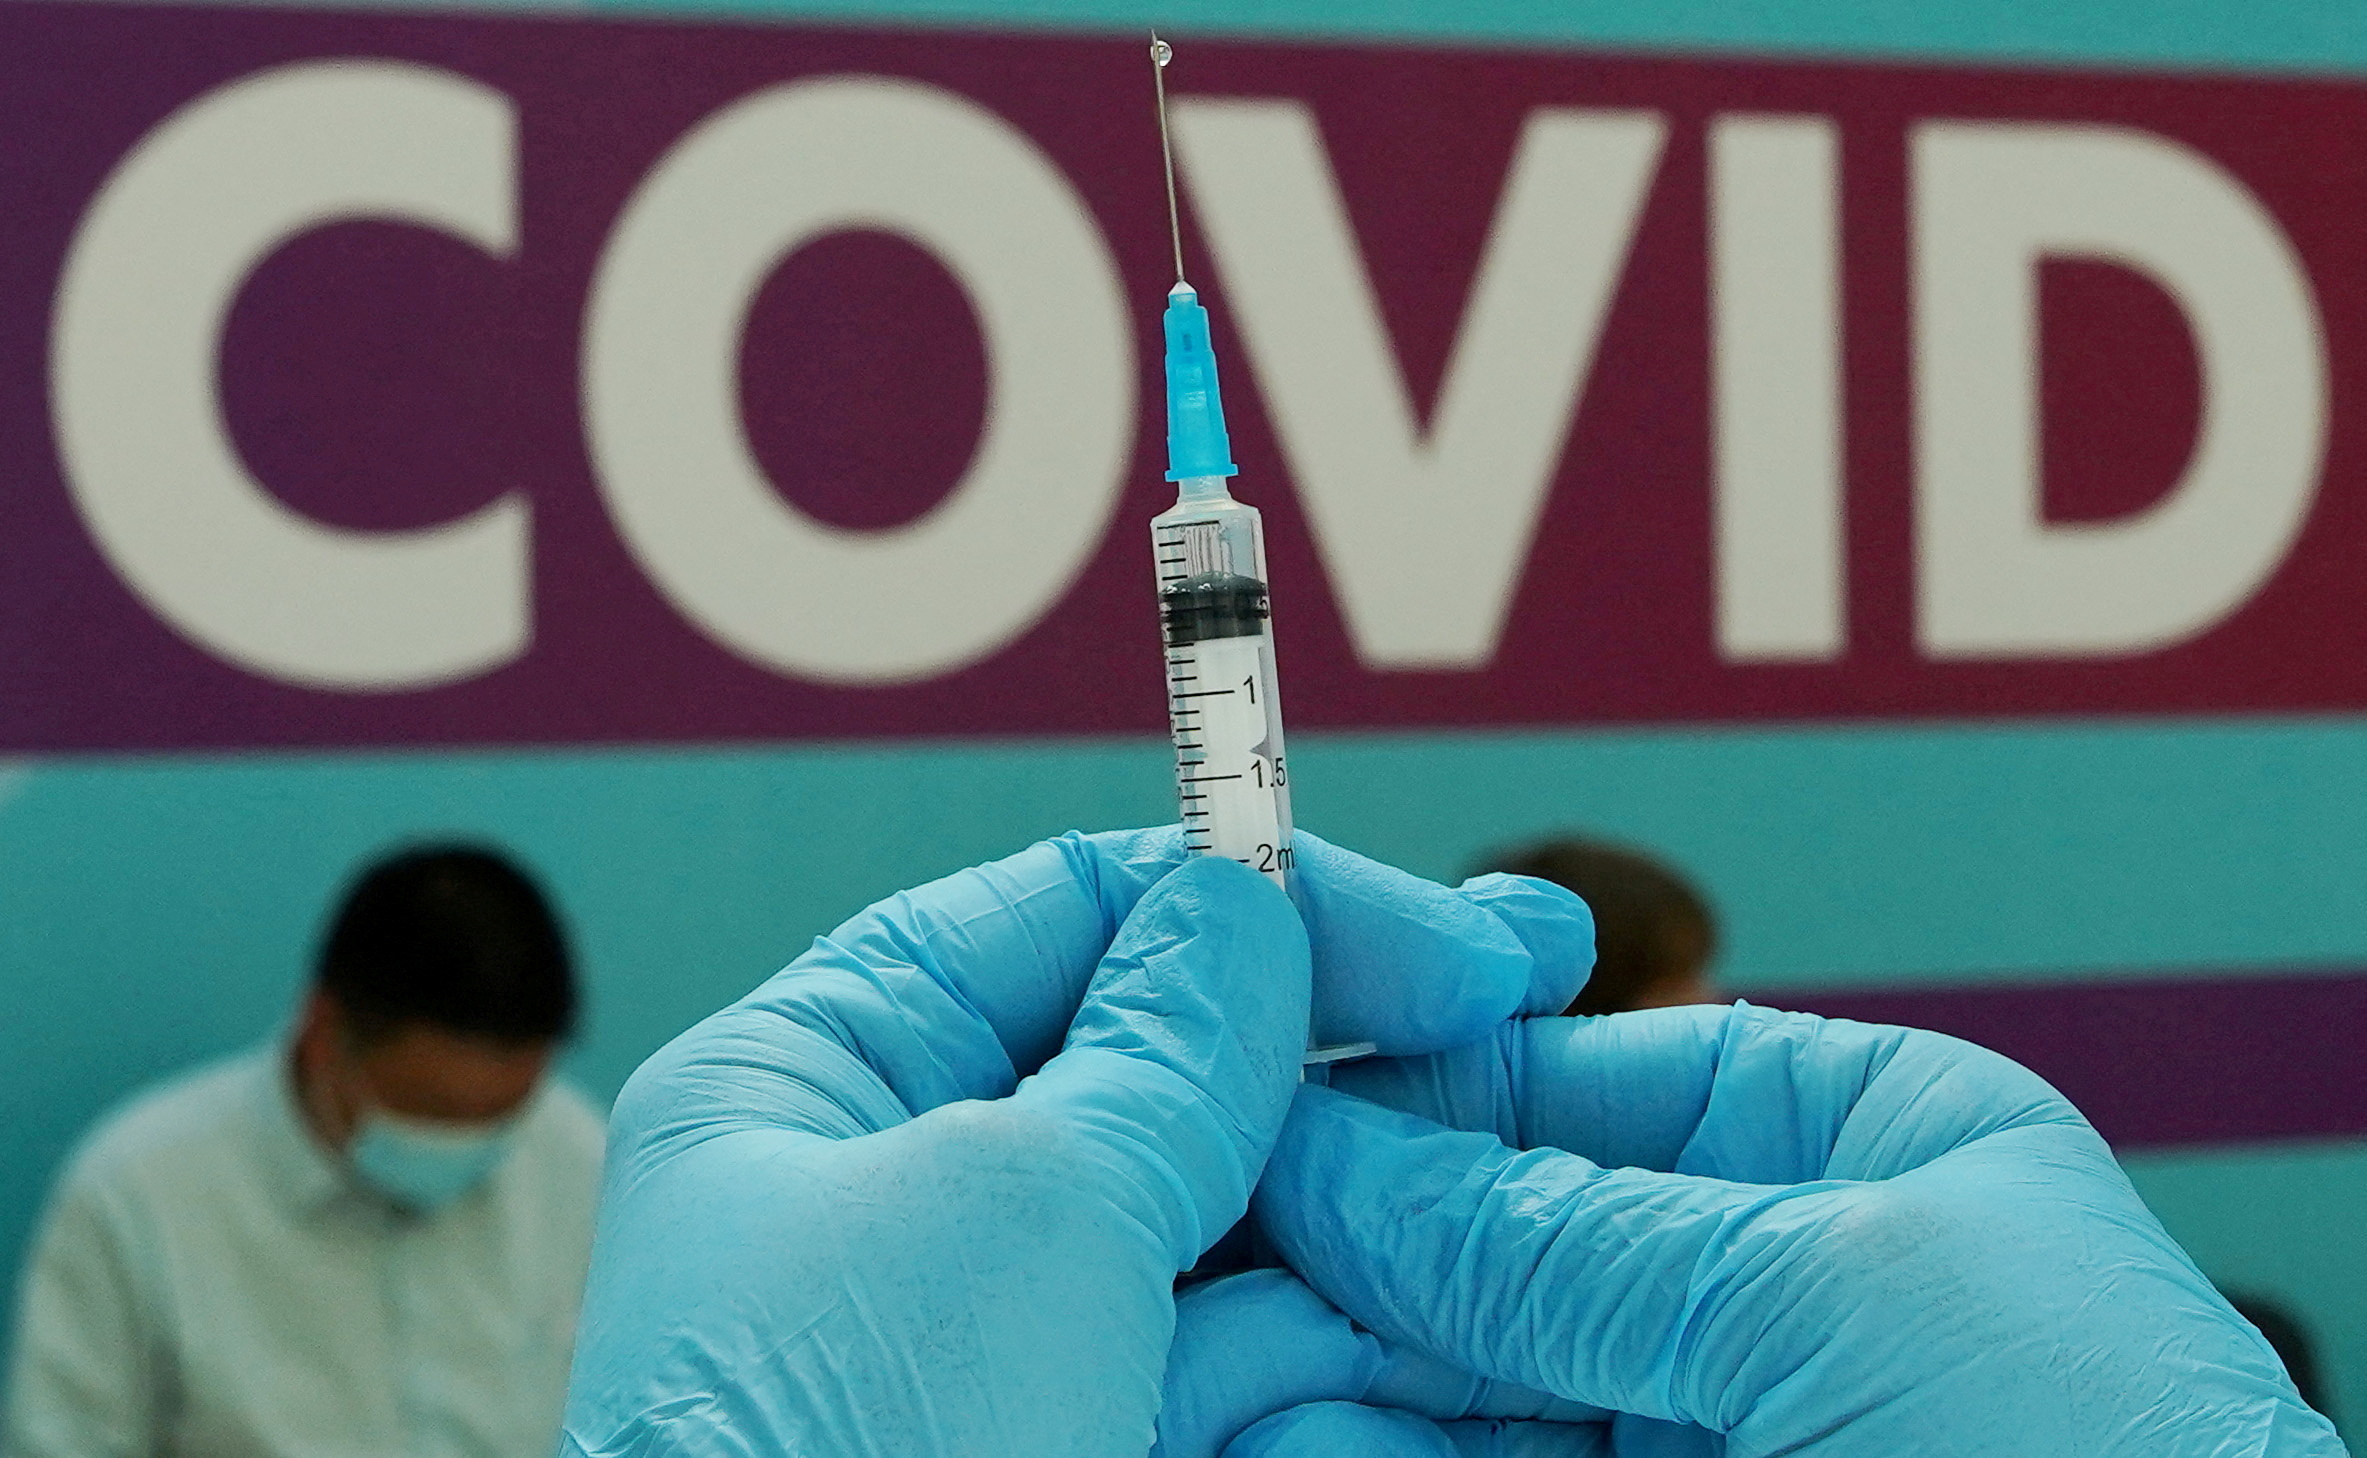 Κορονοϊός: Τα εμβόλια κατά της Covid-19 έσωσαν σχεδόν 20 εκατομμύρια ζωές